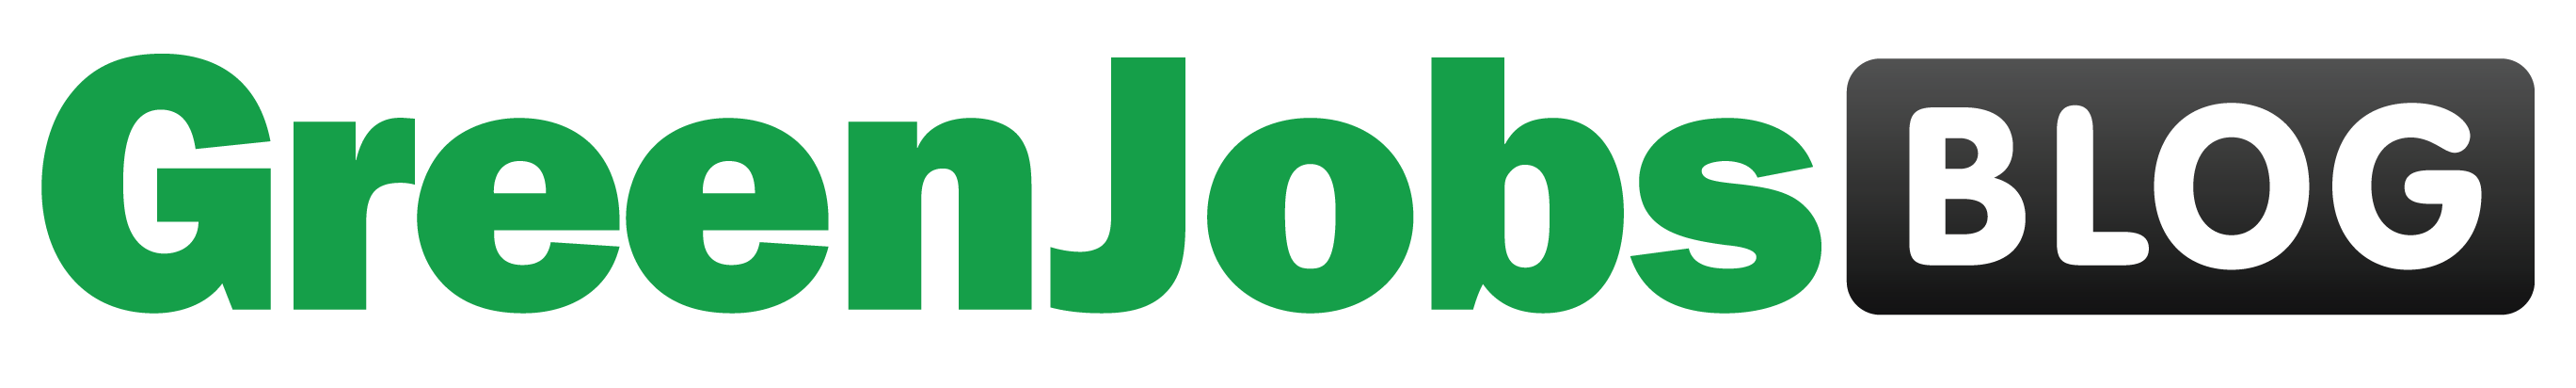 GreenJobsBlog Logo